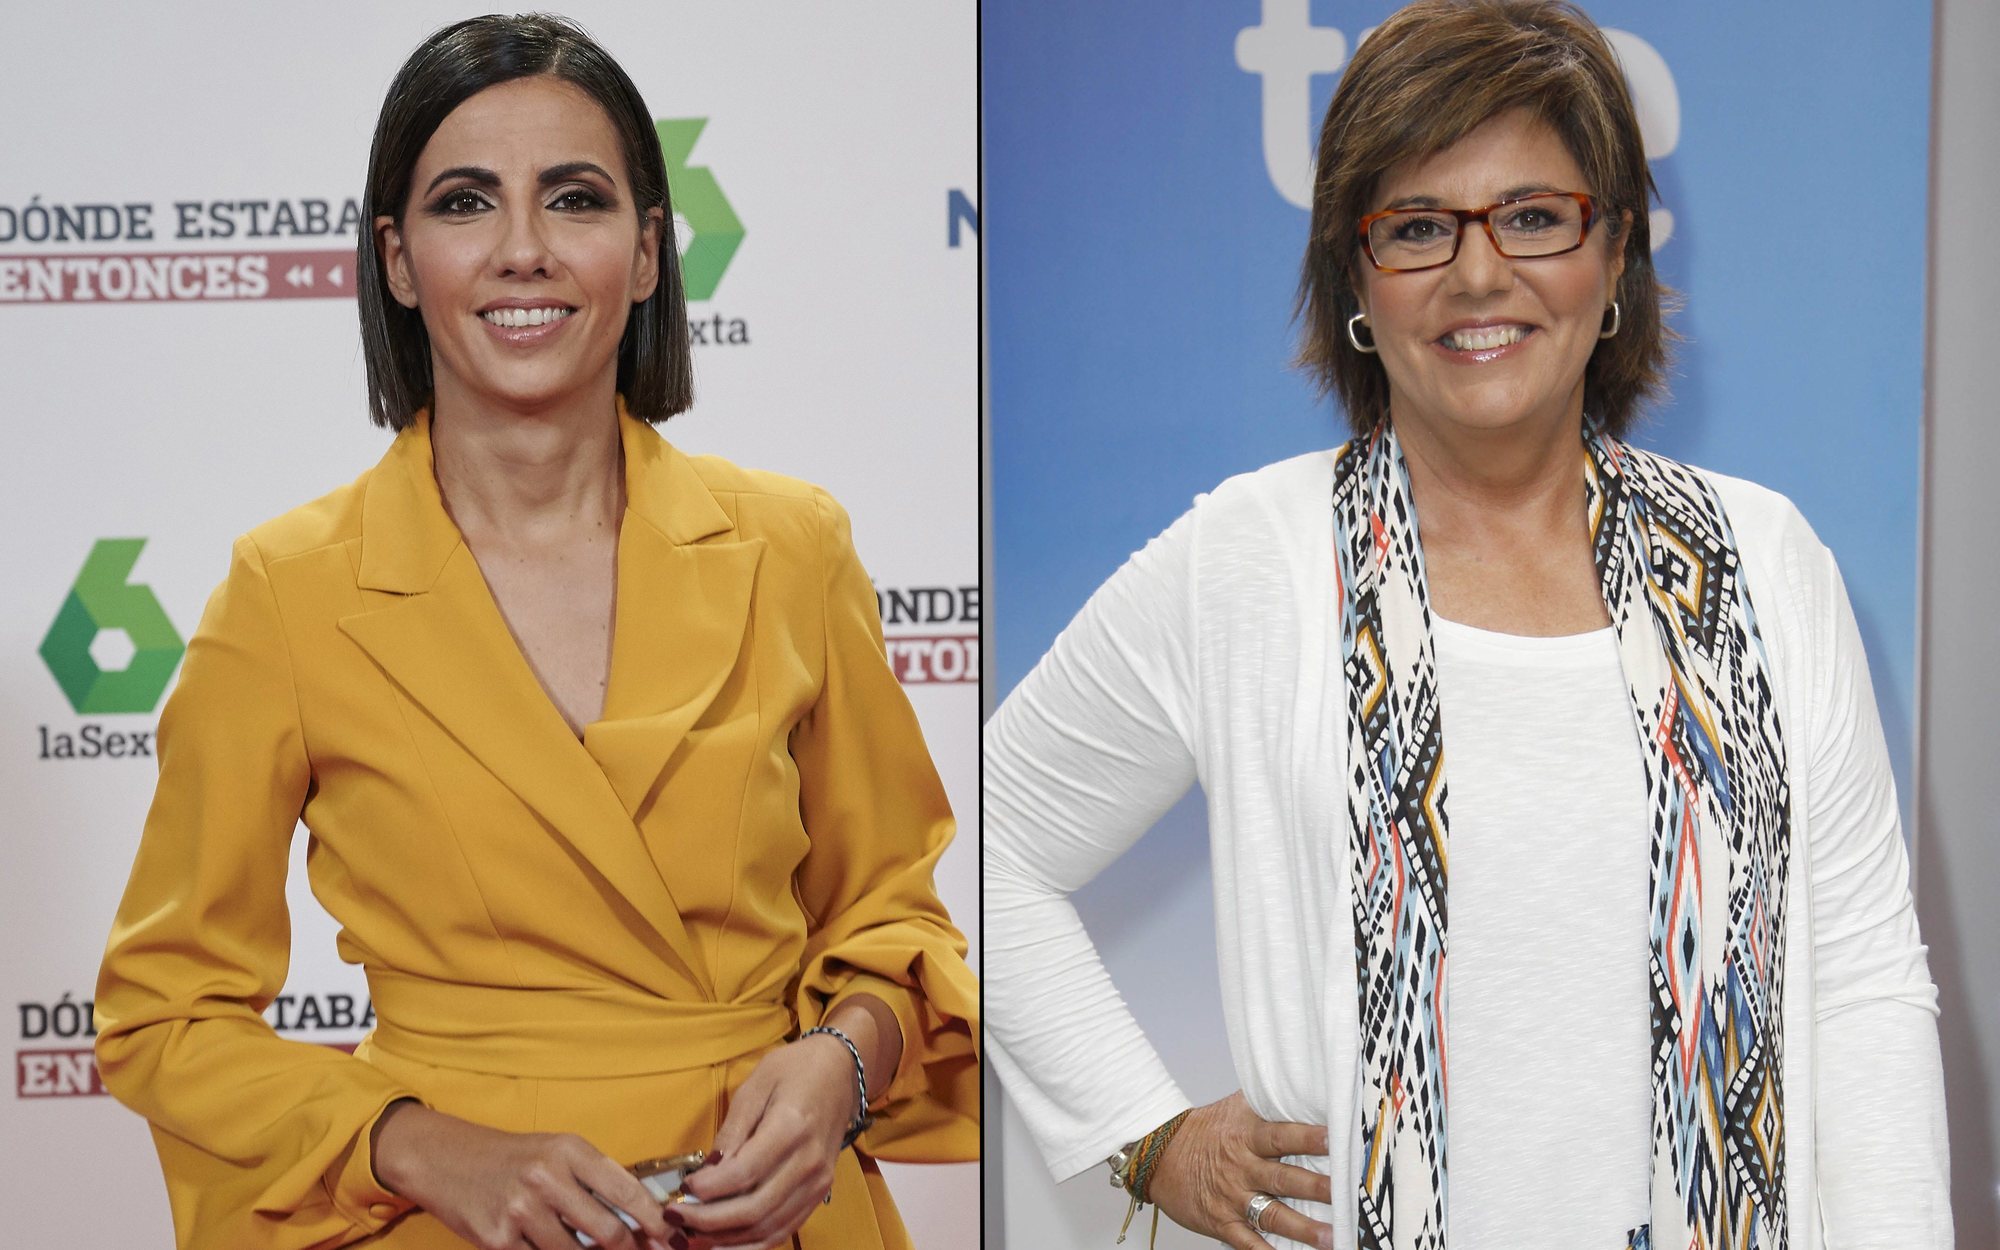 El toque de atención de María Escario desde TVE a Ana Pastor por presumir de laSexta: "A cada cual lo suyo"